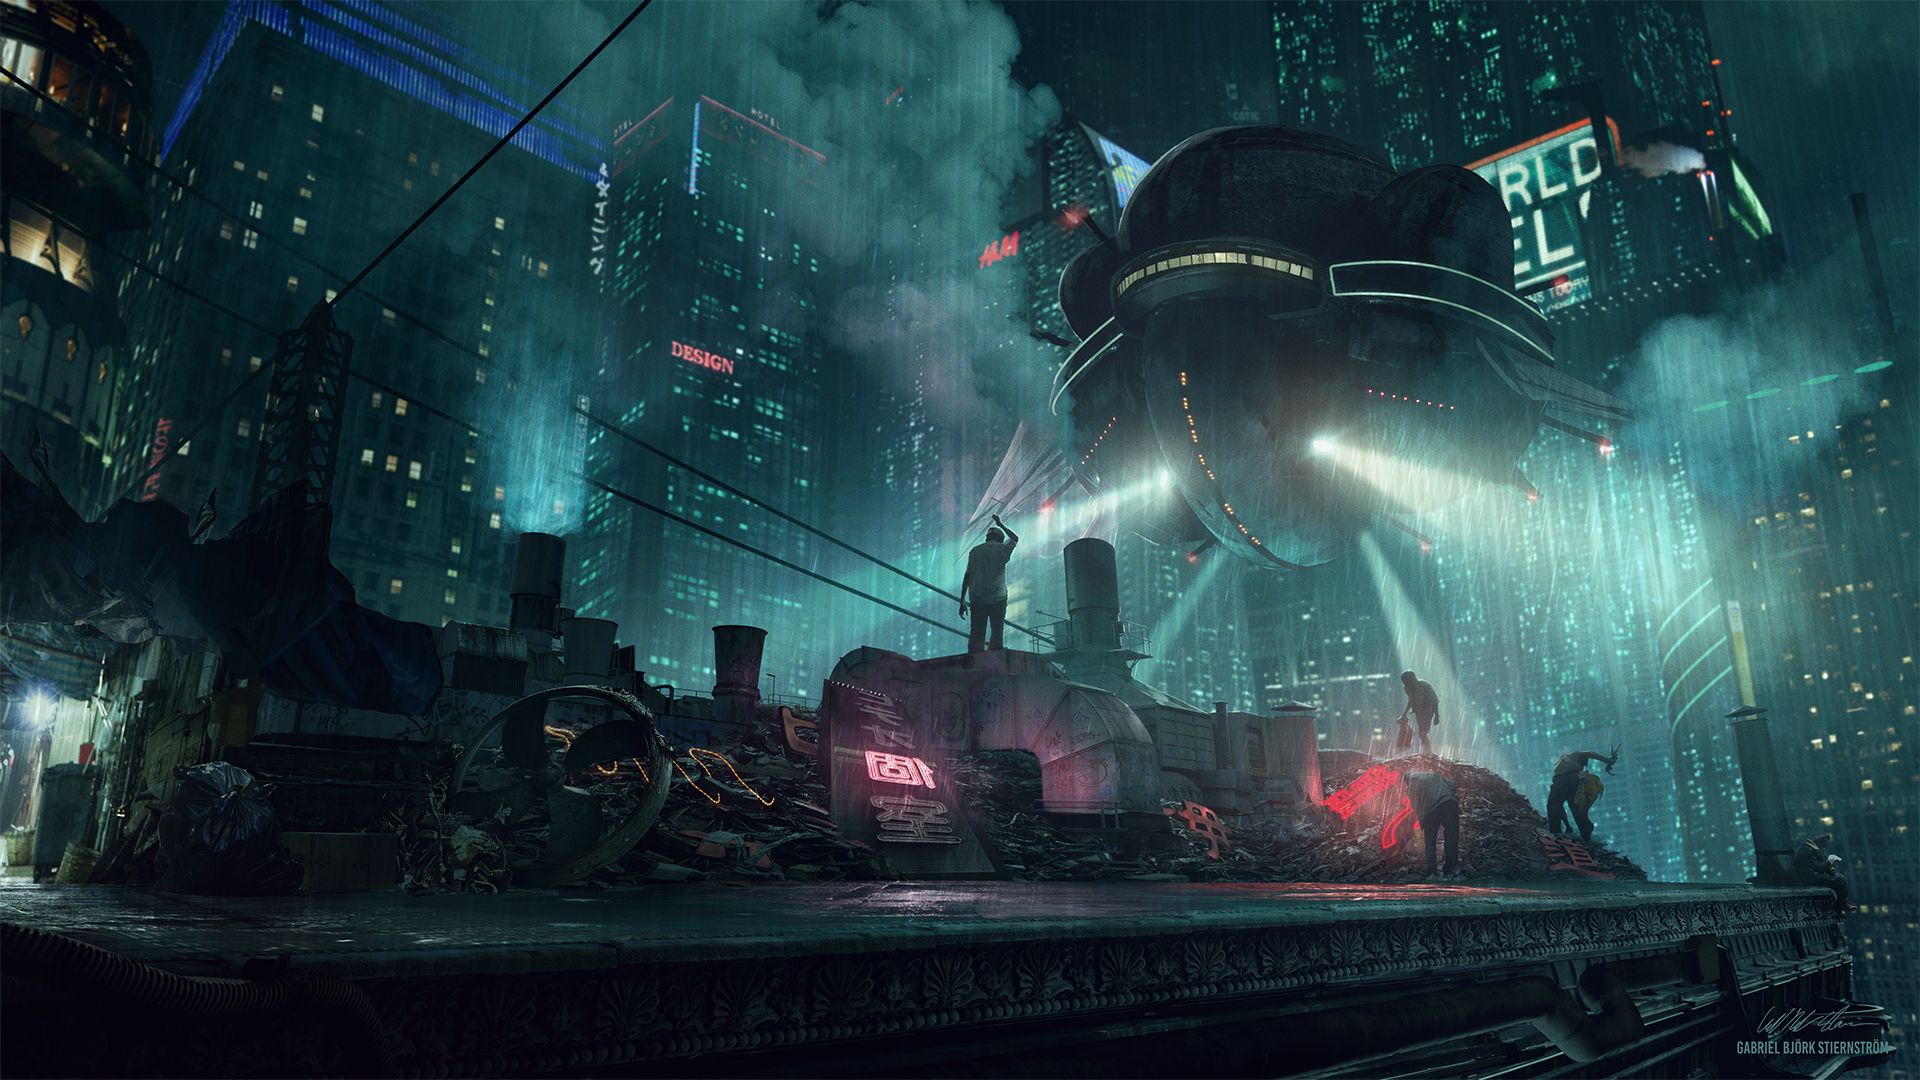 futuristic, cyberpunk, vehicle, sci fi, city, night, rain, skyscraper